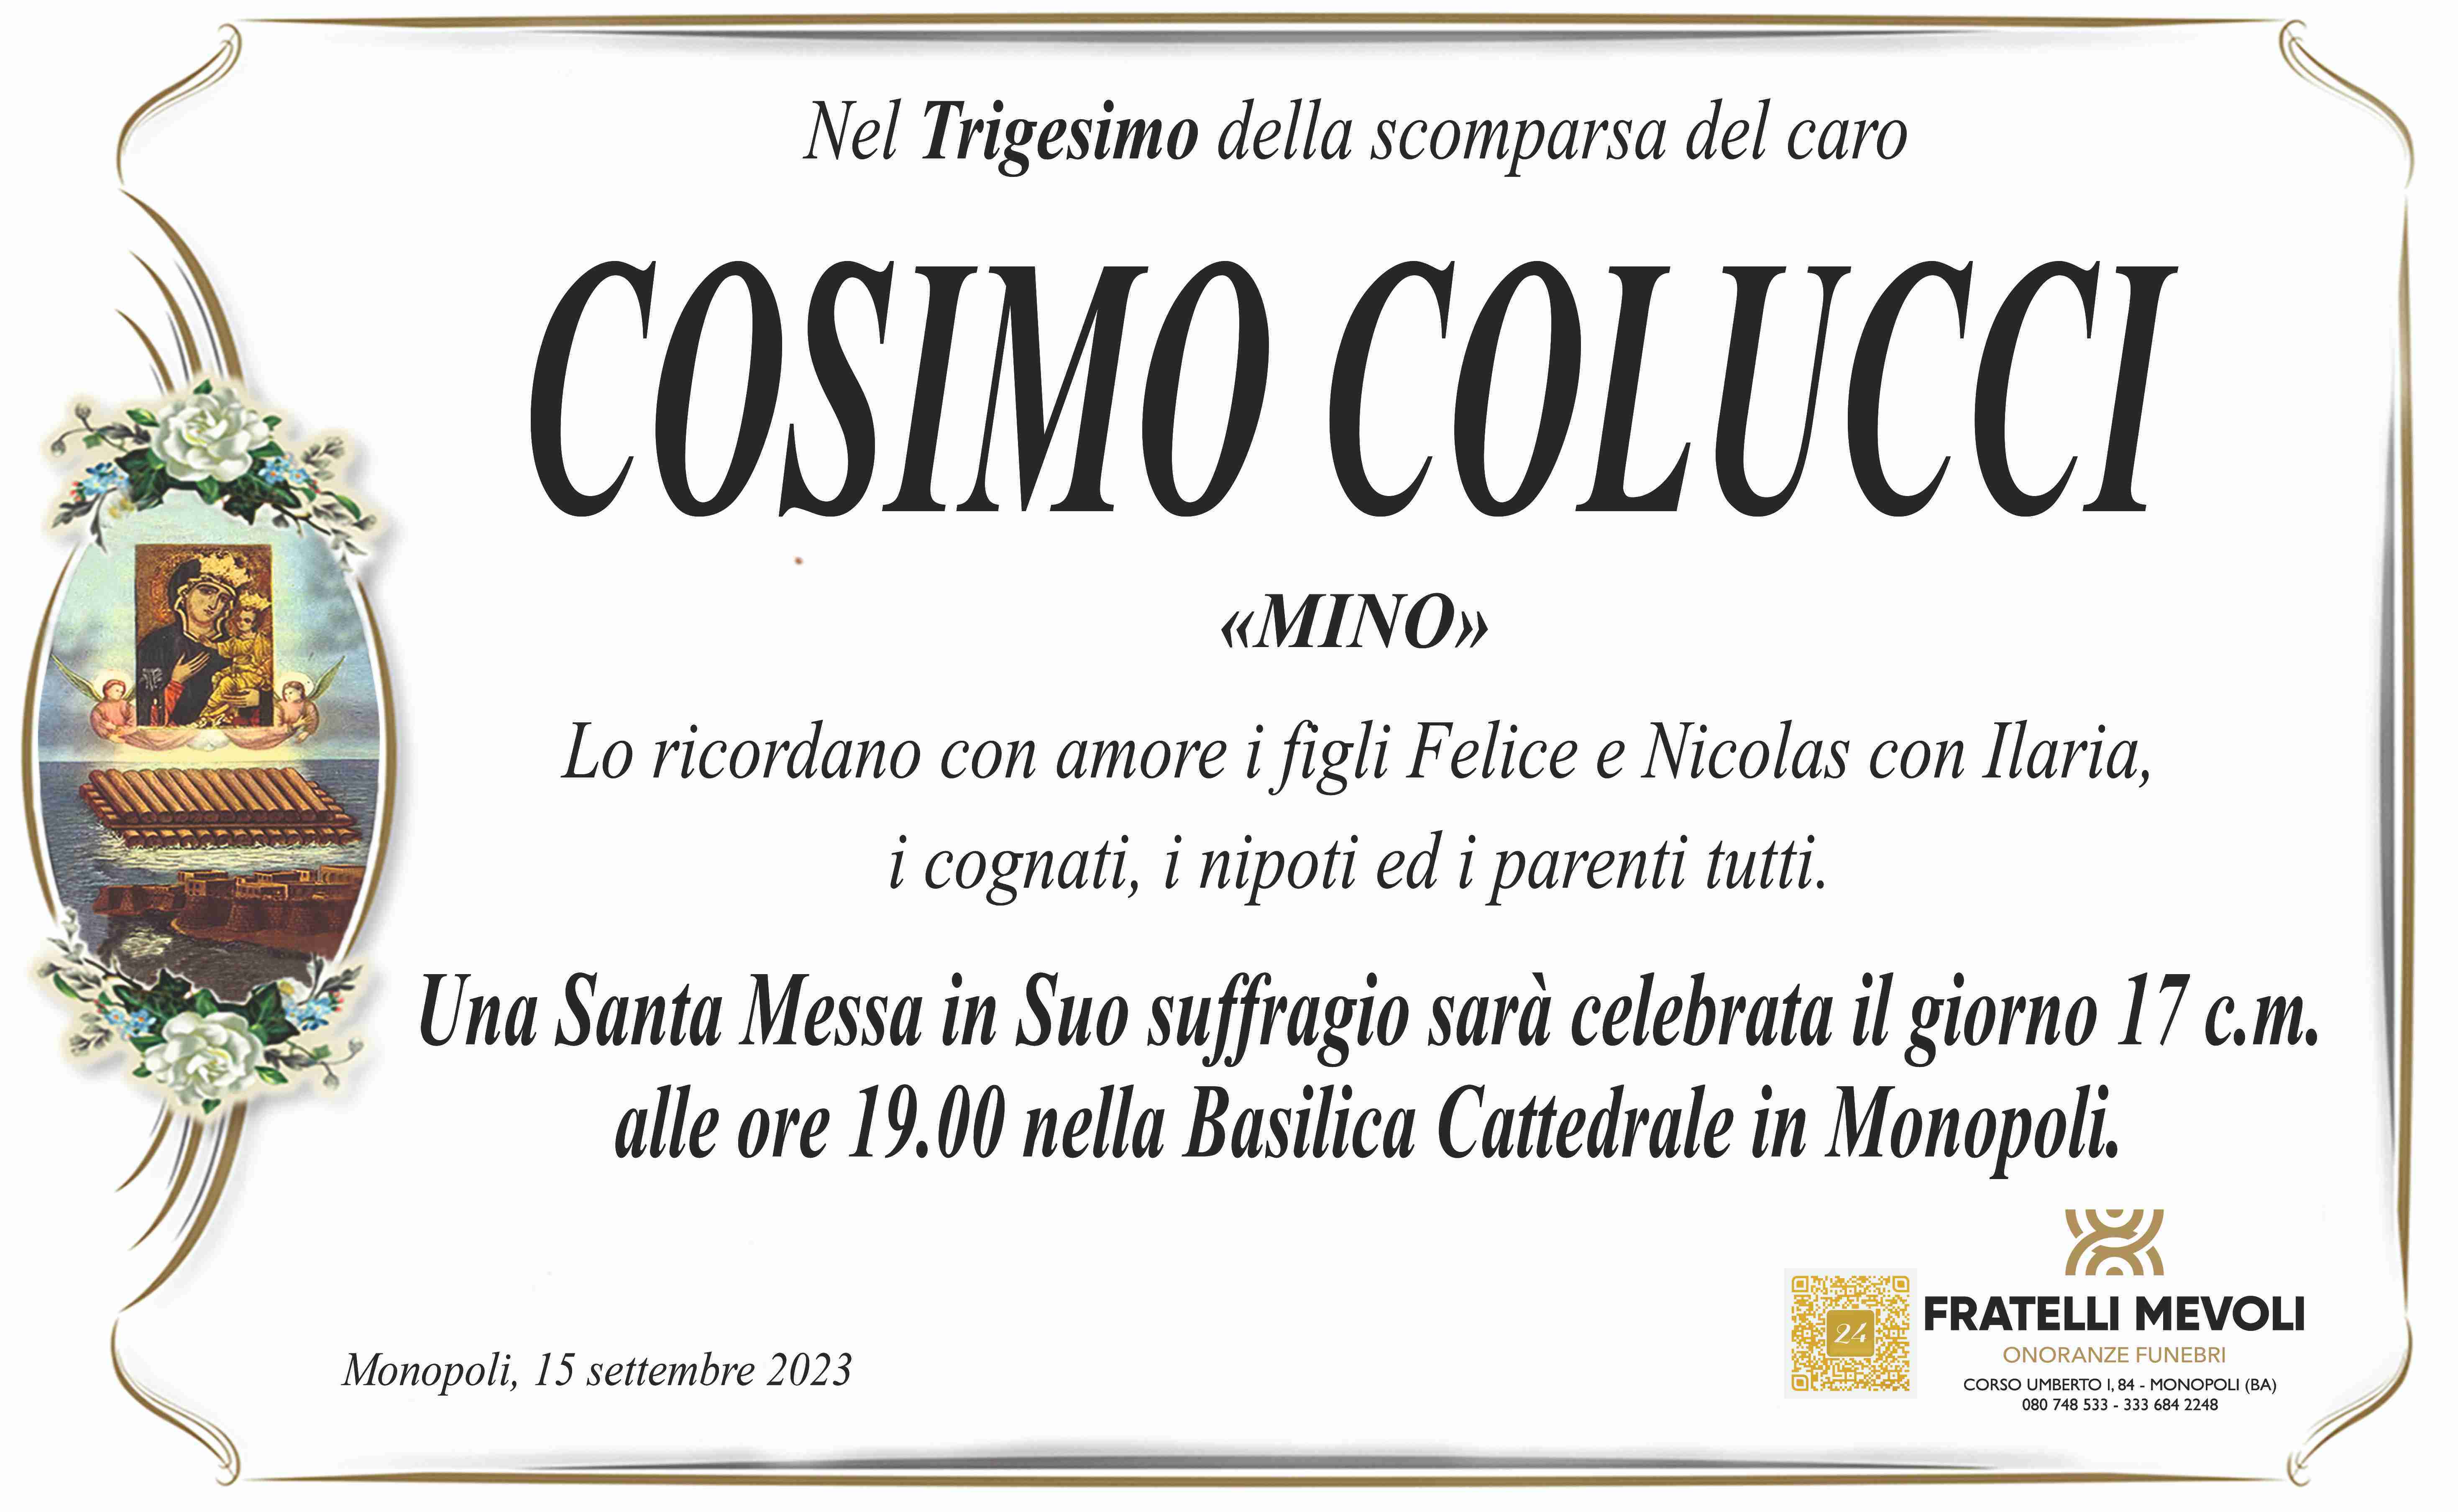 Cosimo Colucci